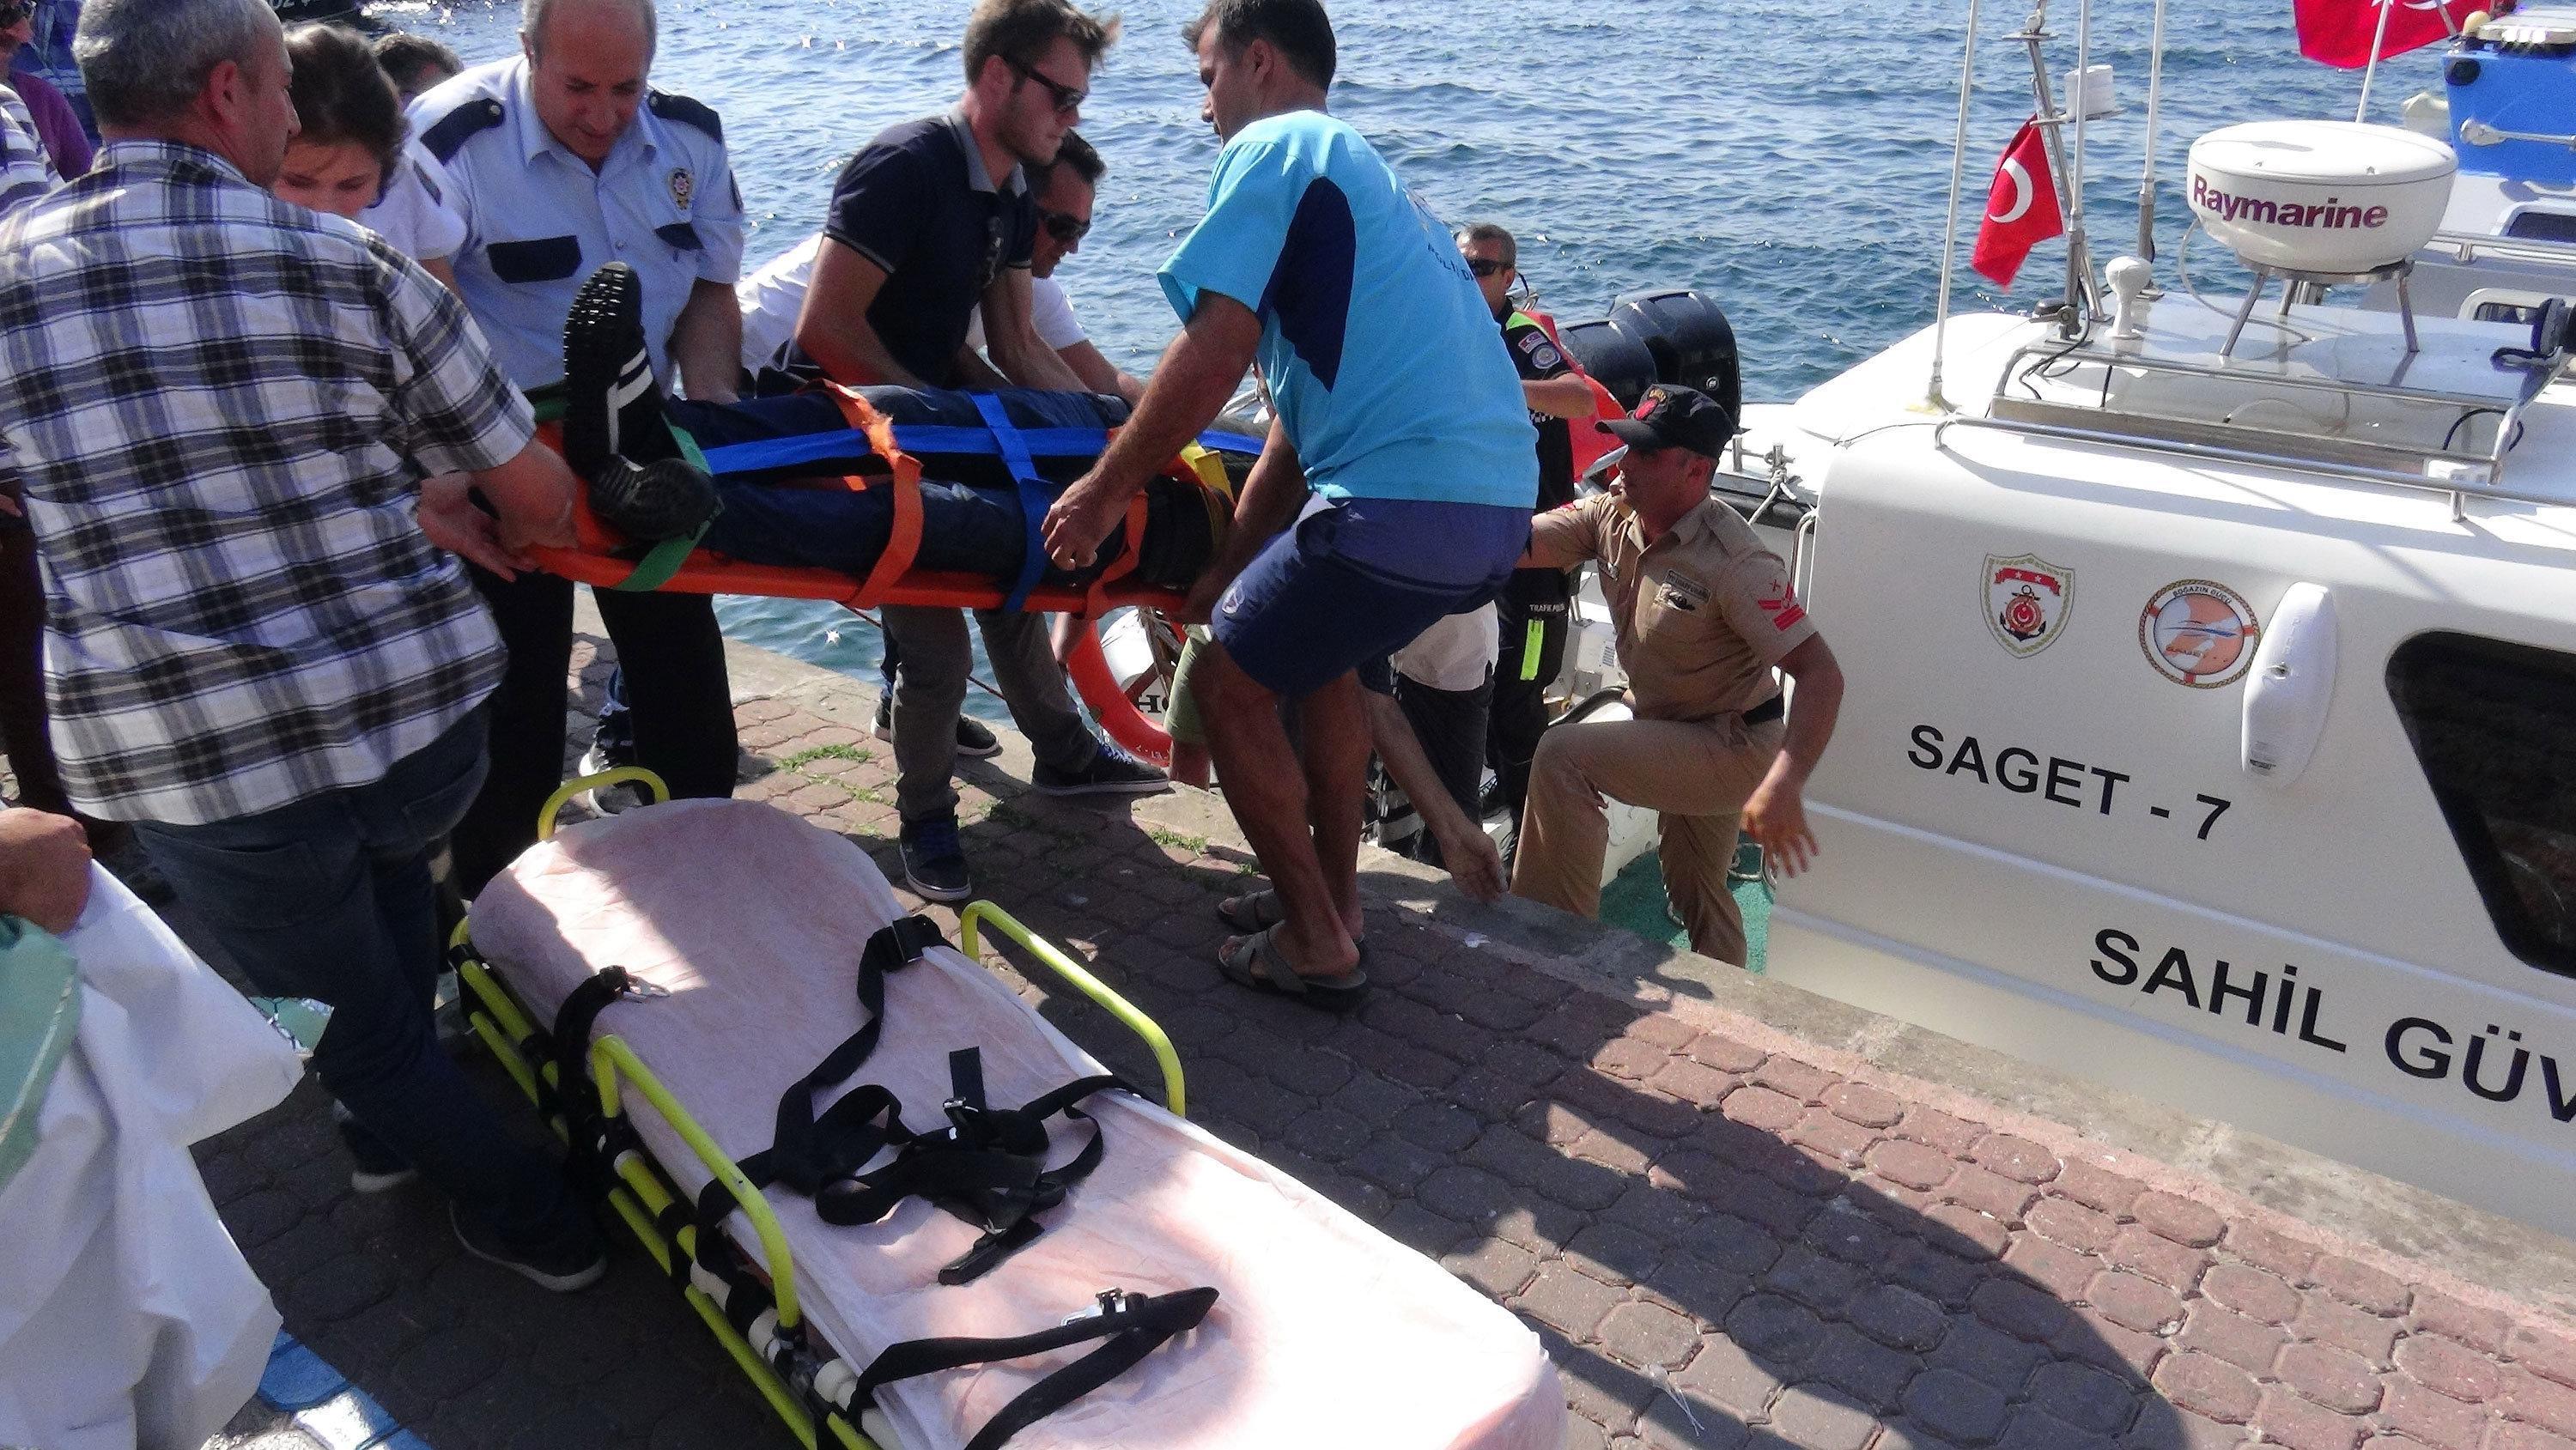 Çanakkalede iskeleden denize düşen kişi hayata döndürüldü